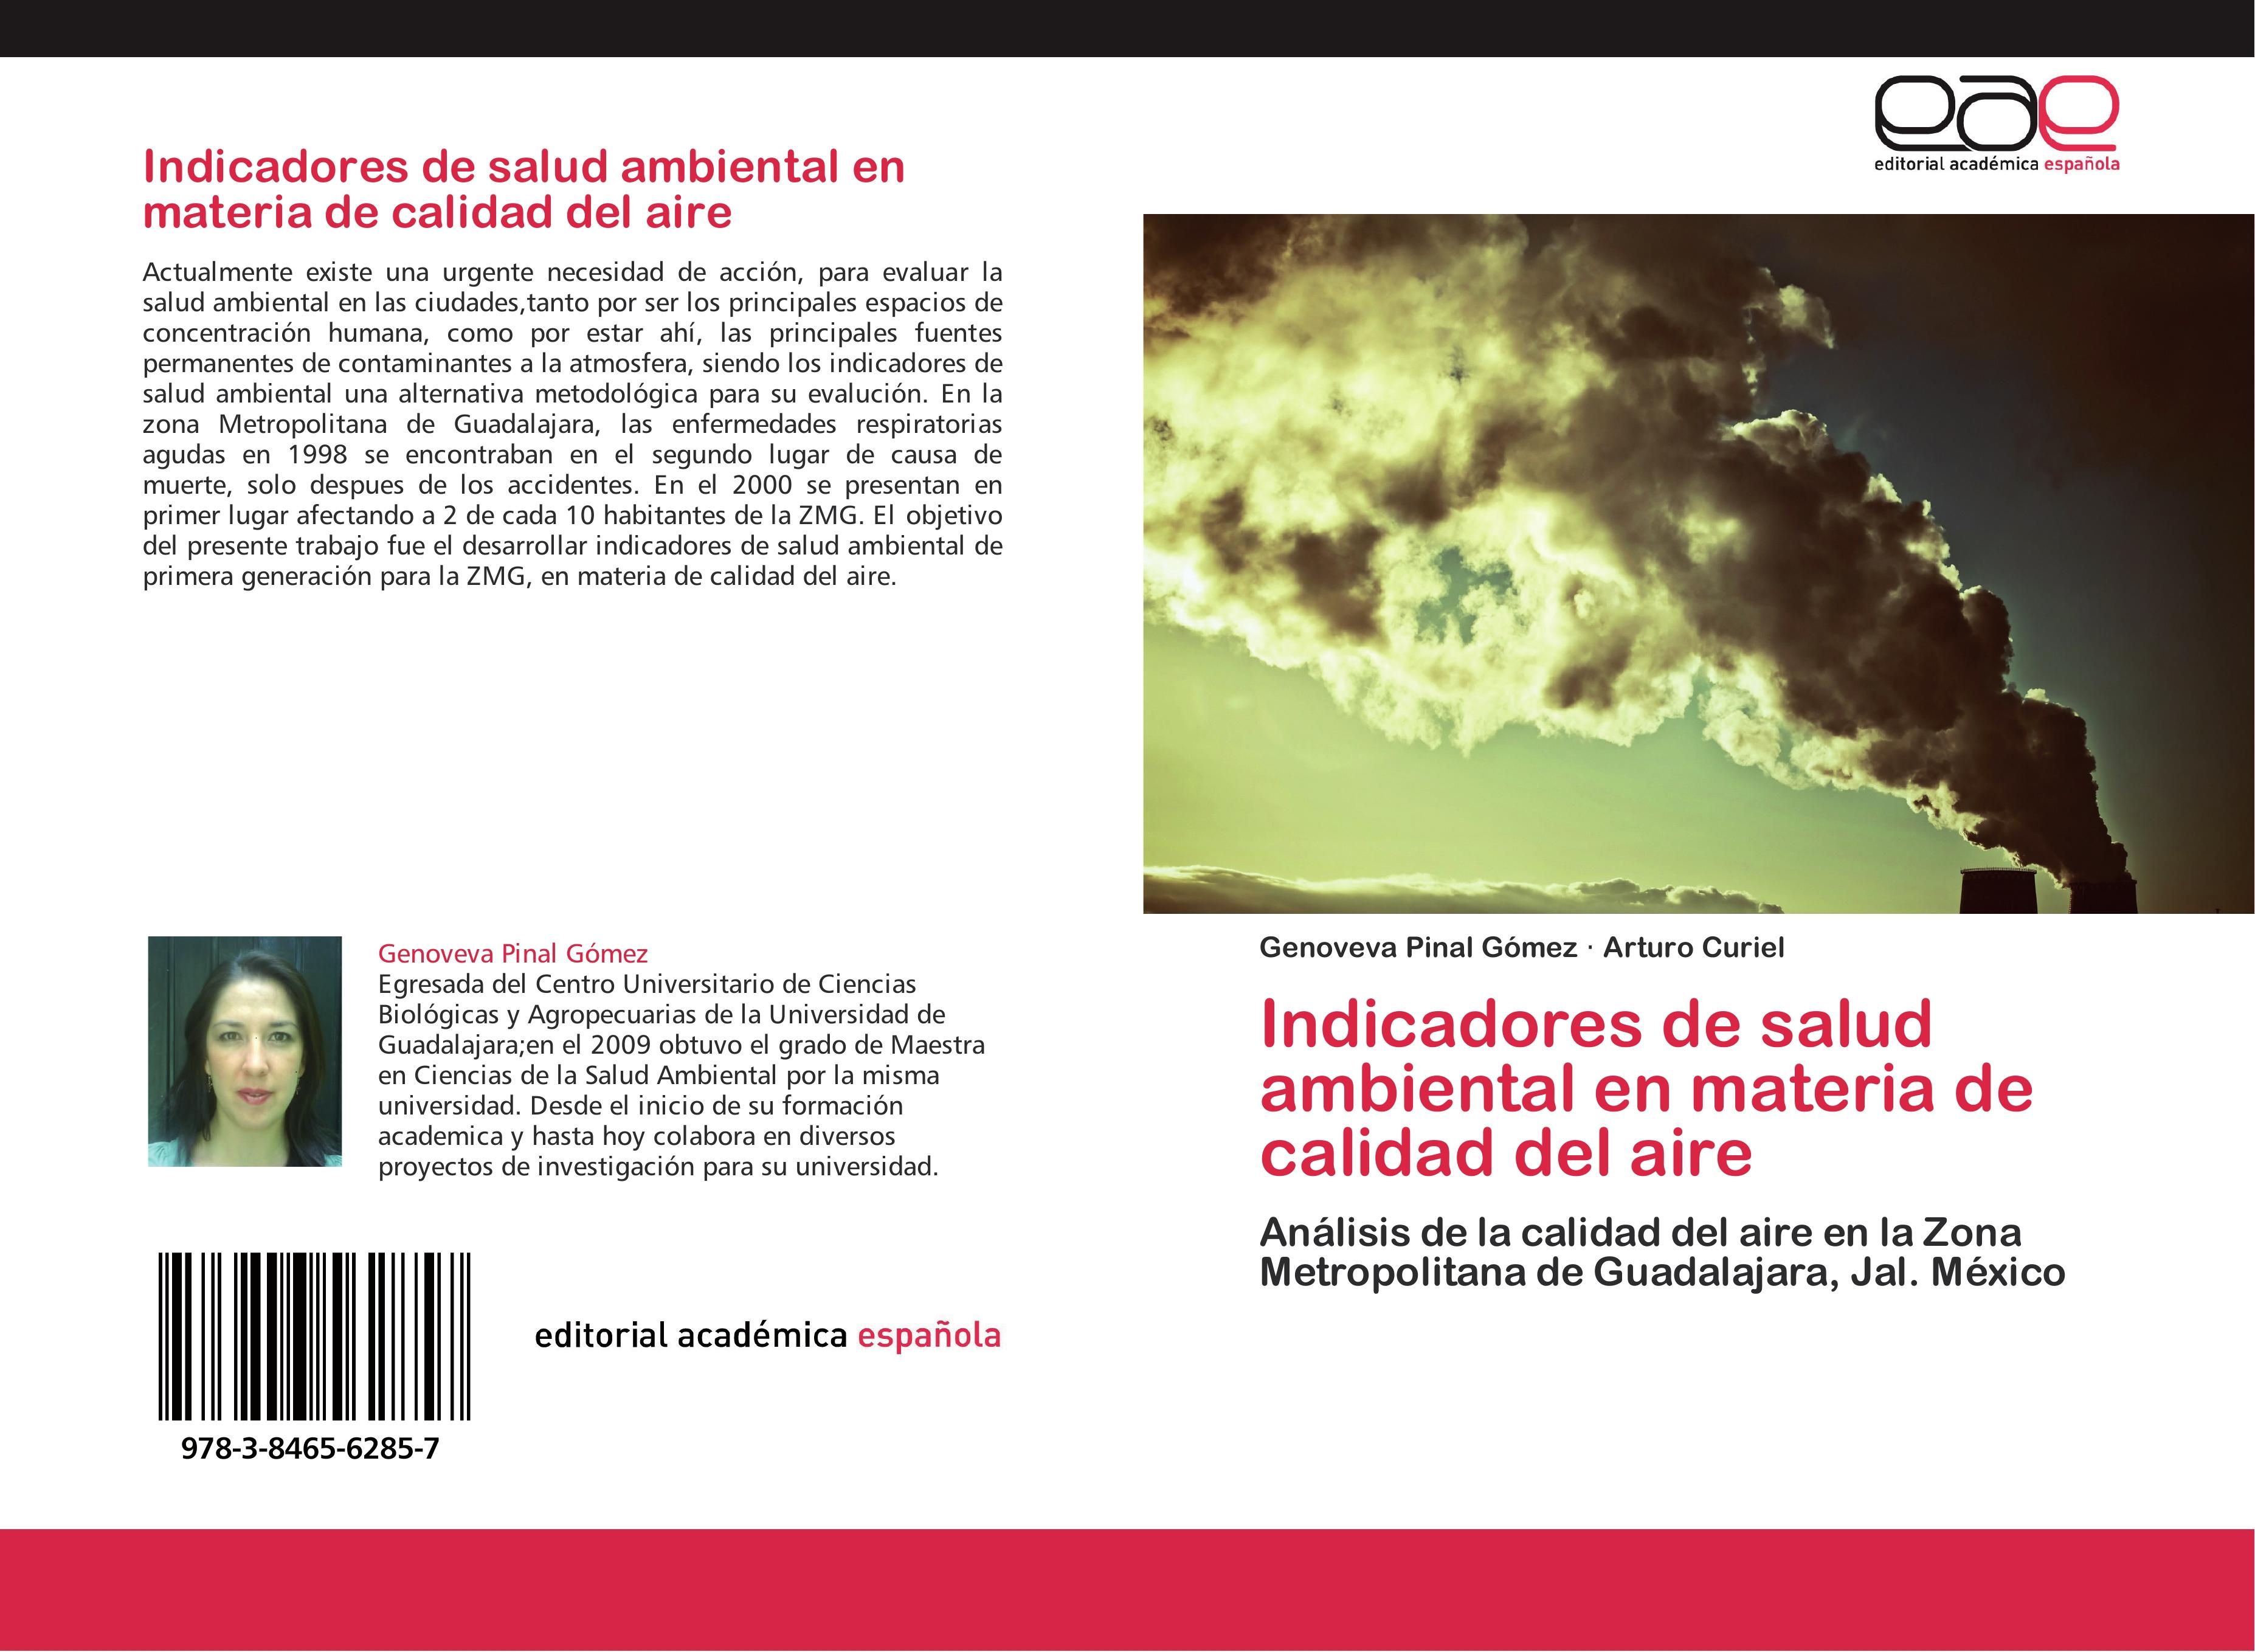 Indicadores de salud ambiental en materia de calidad del aire - Genoveva Pinal Gómez Arturo Curiel